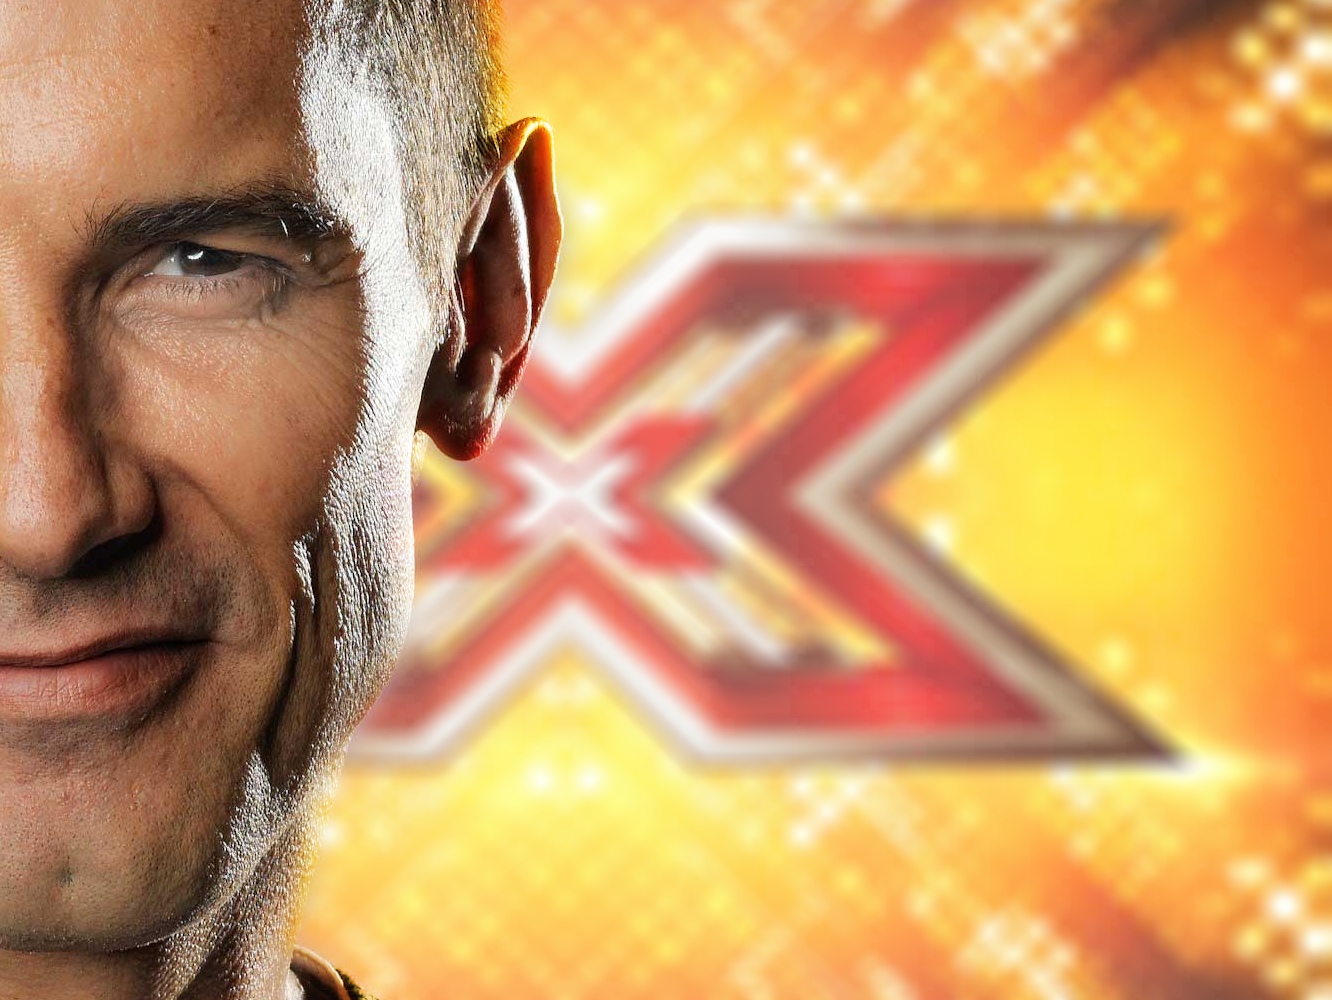  Mediaset pone a Jesús Vázquez al frente del nuevo ‘Factor X’